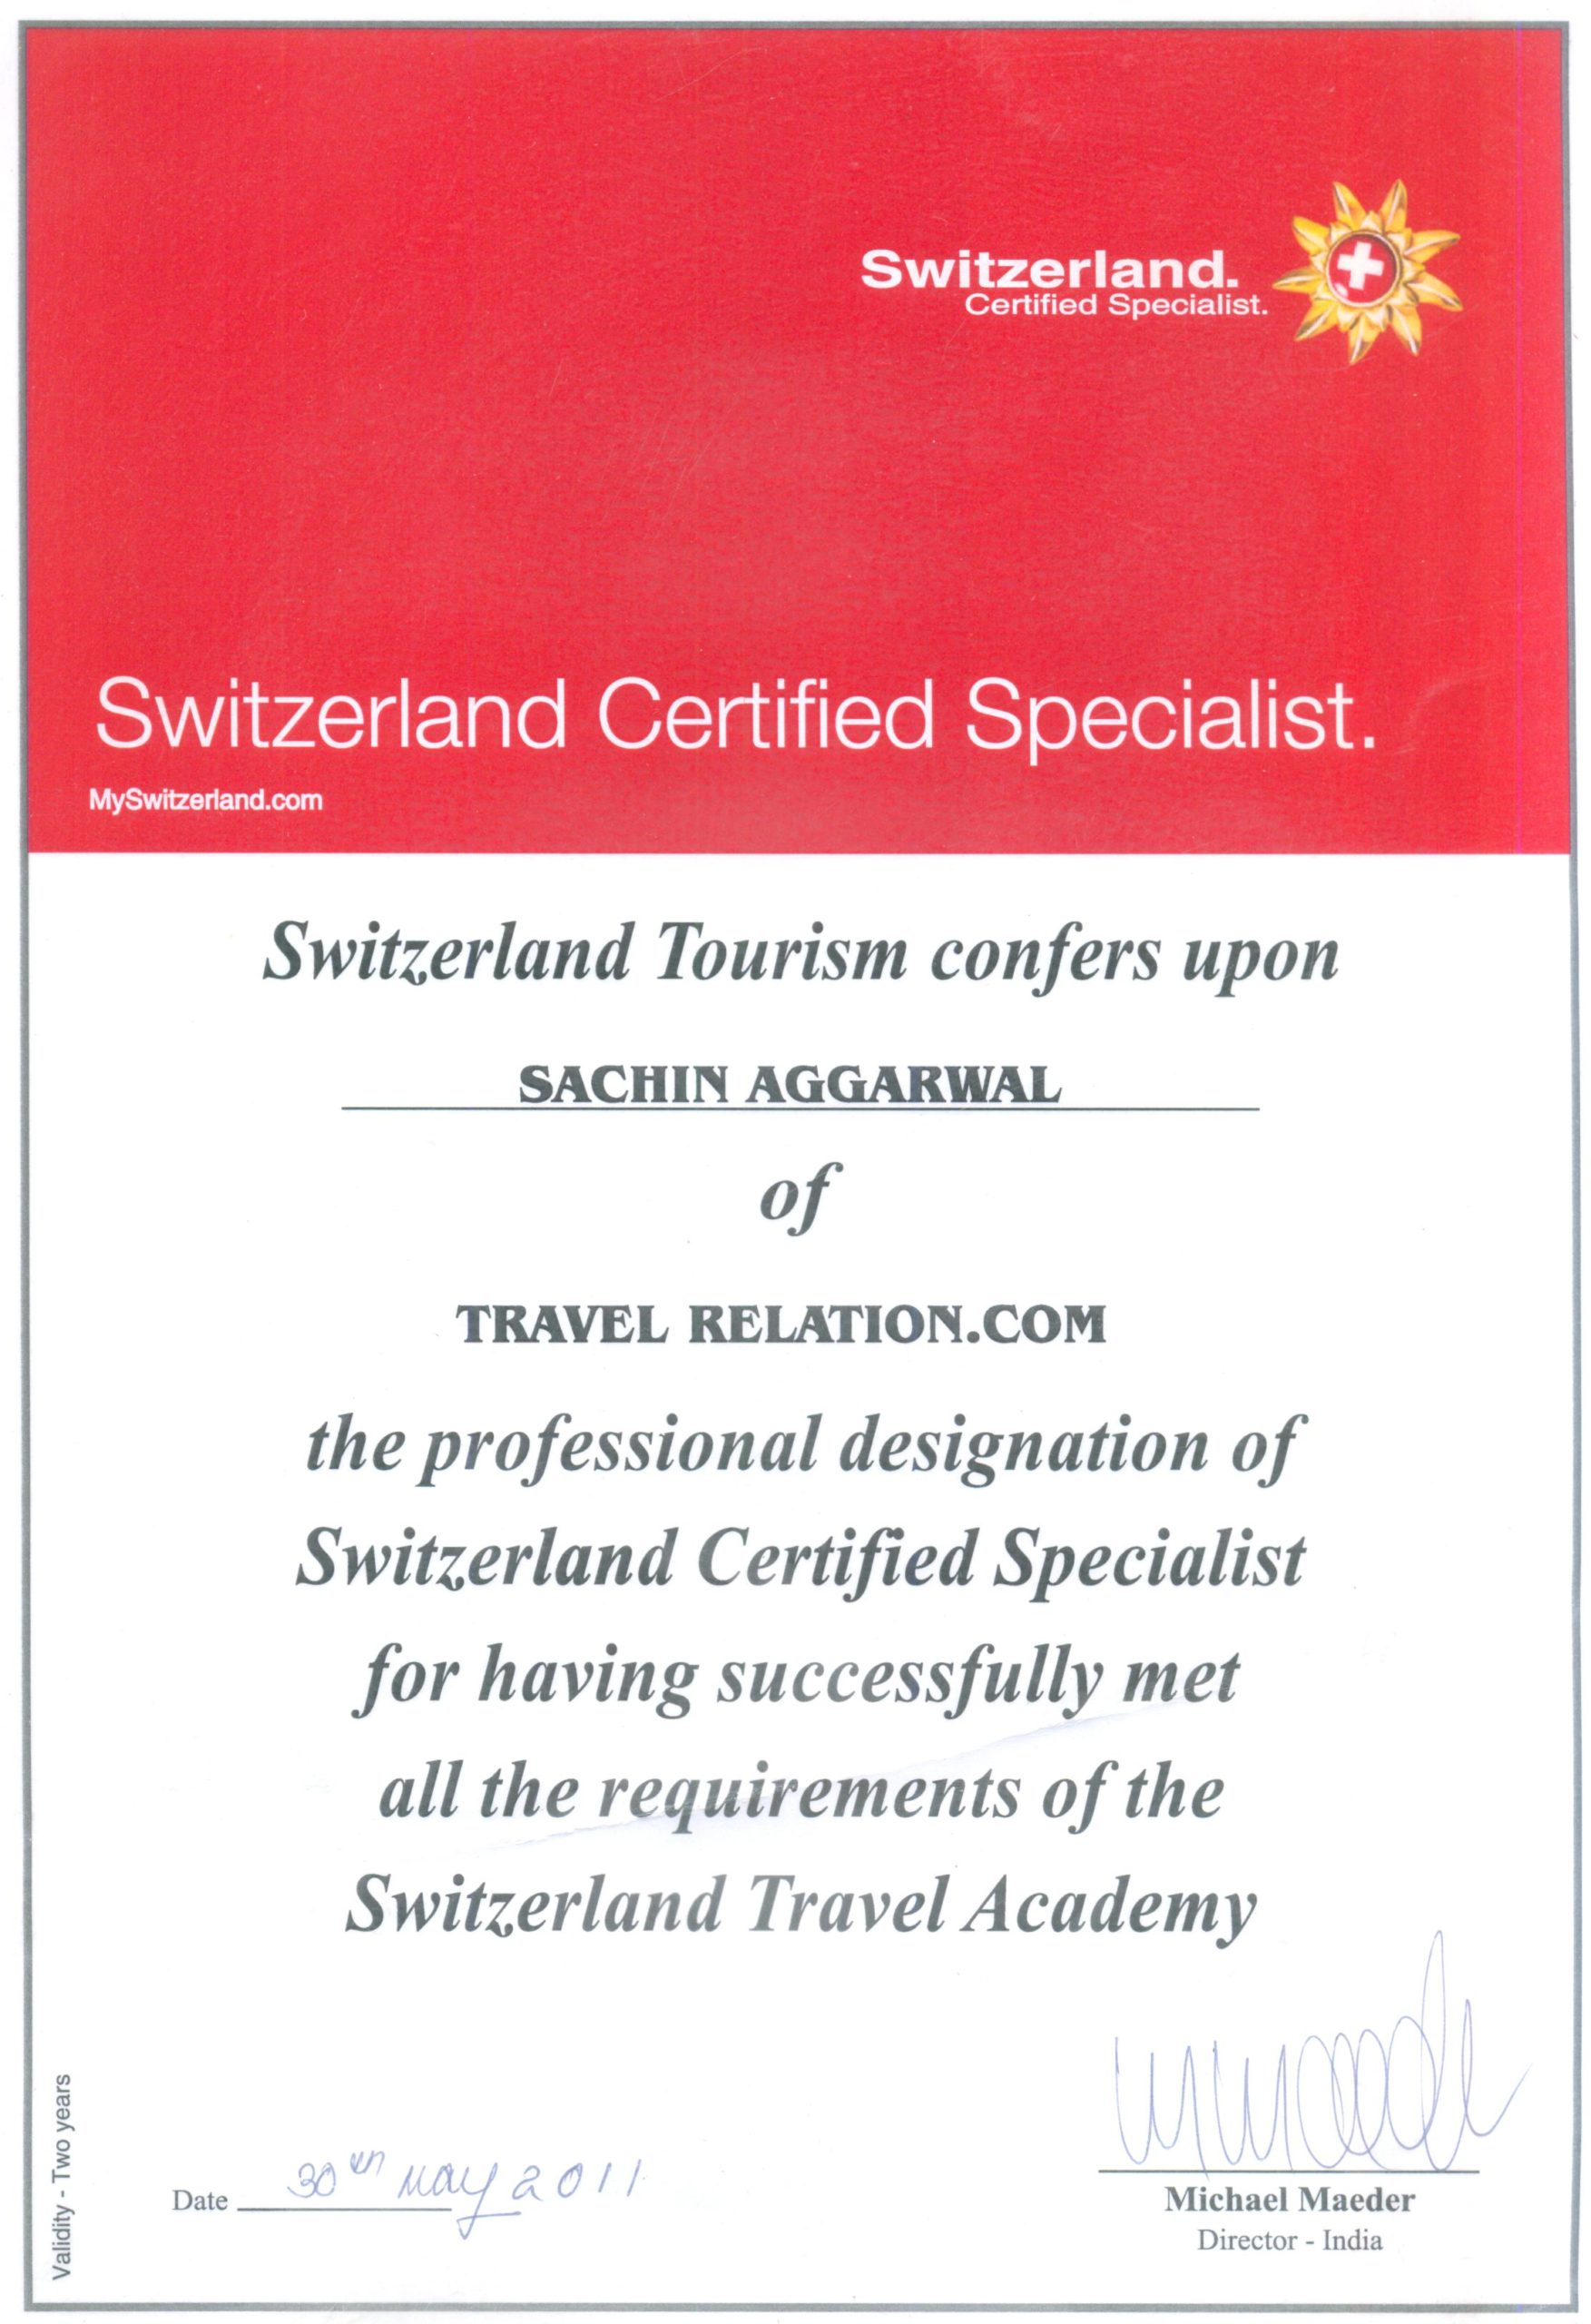 Switzerland Certified Specialist